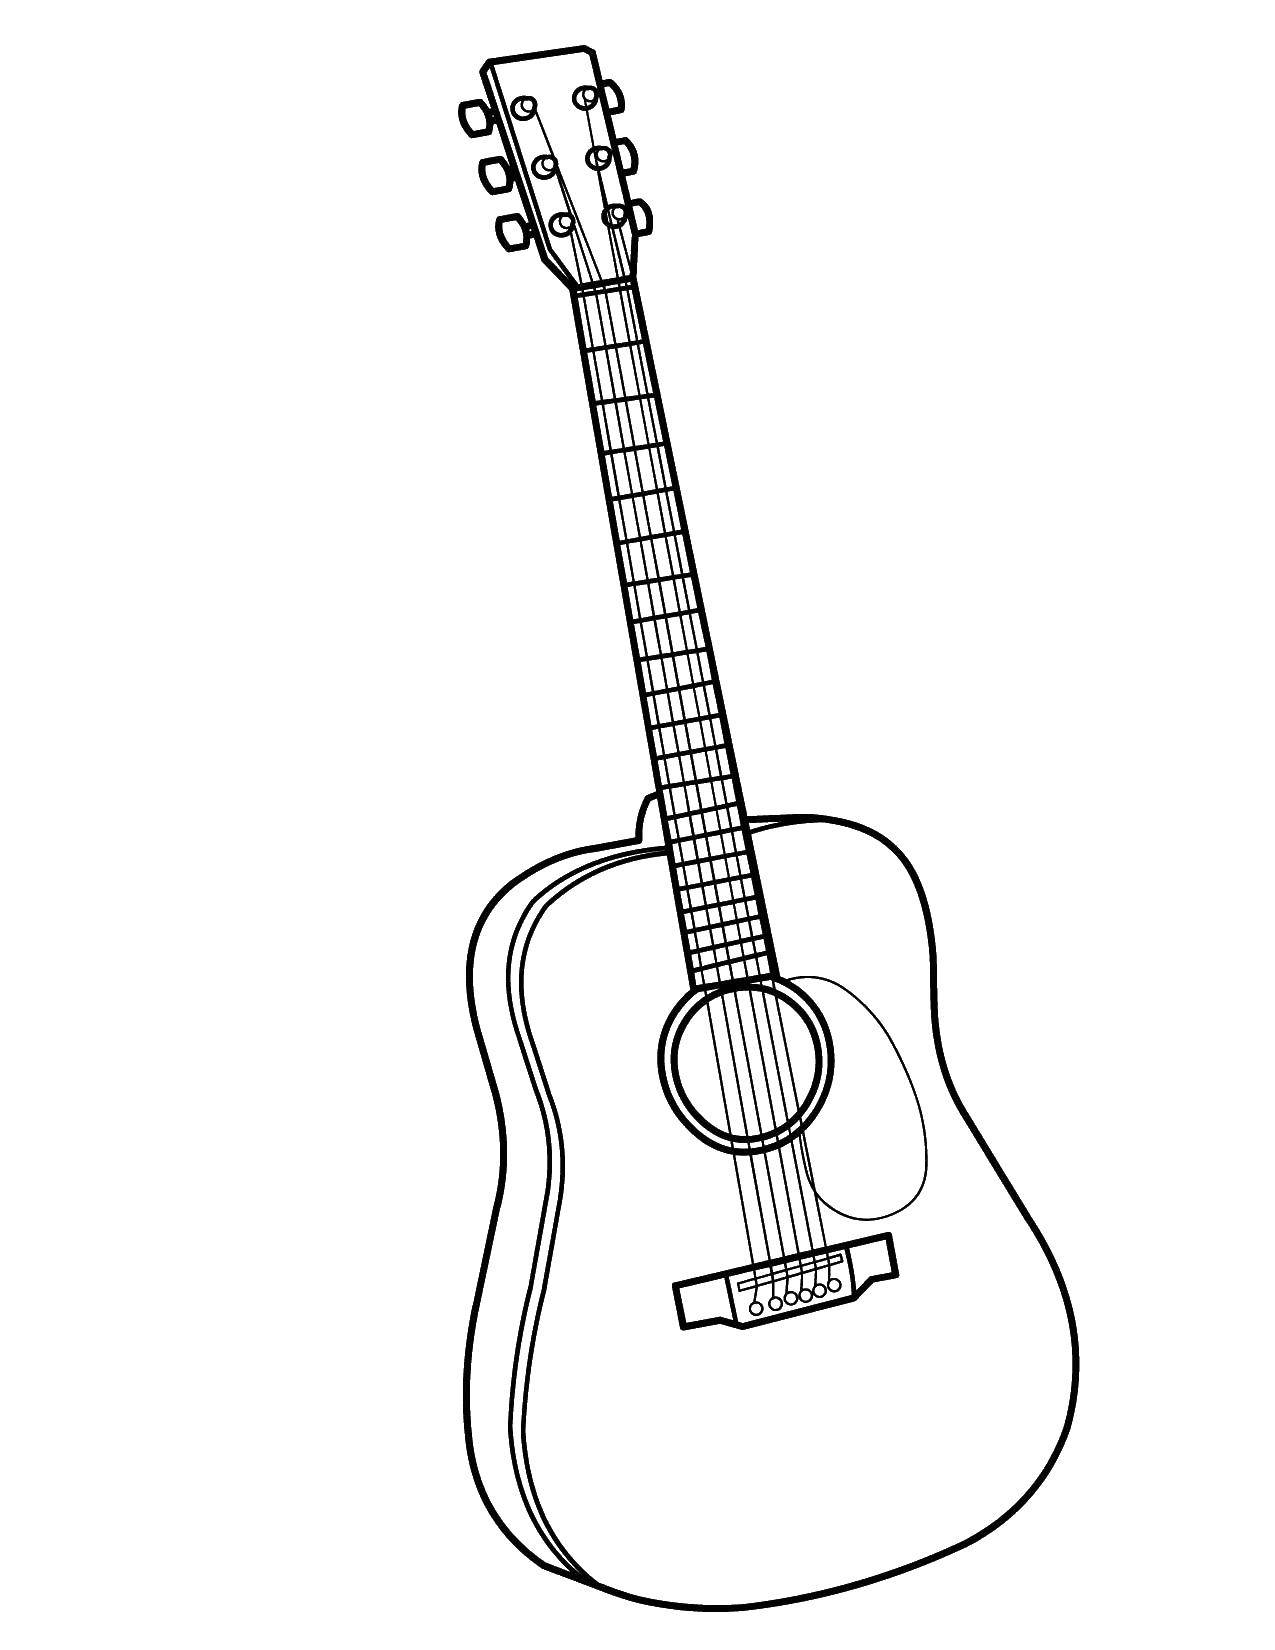 Название: Раскраска Гитара. Категория: Музыка. Теги: музыка, музыкальные инструменты, гитара.